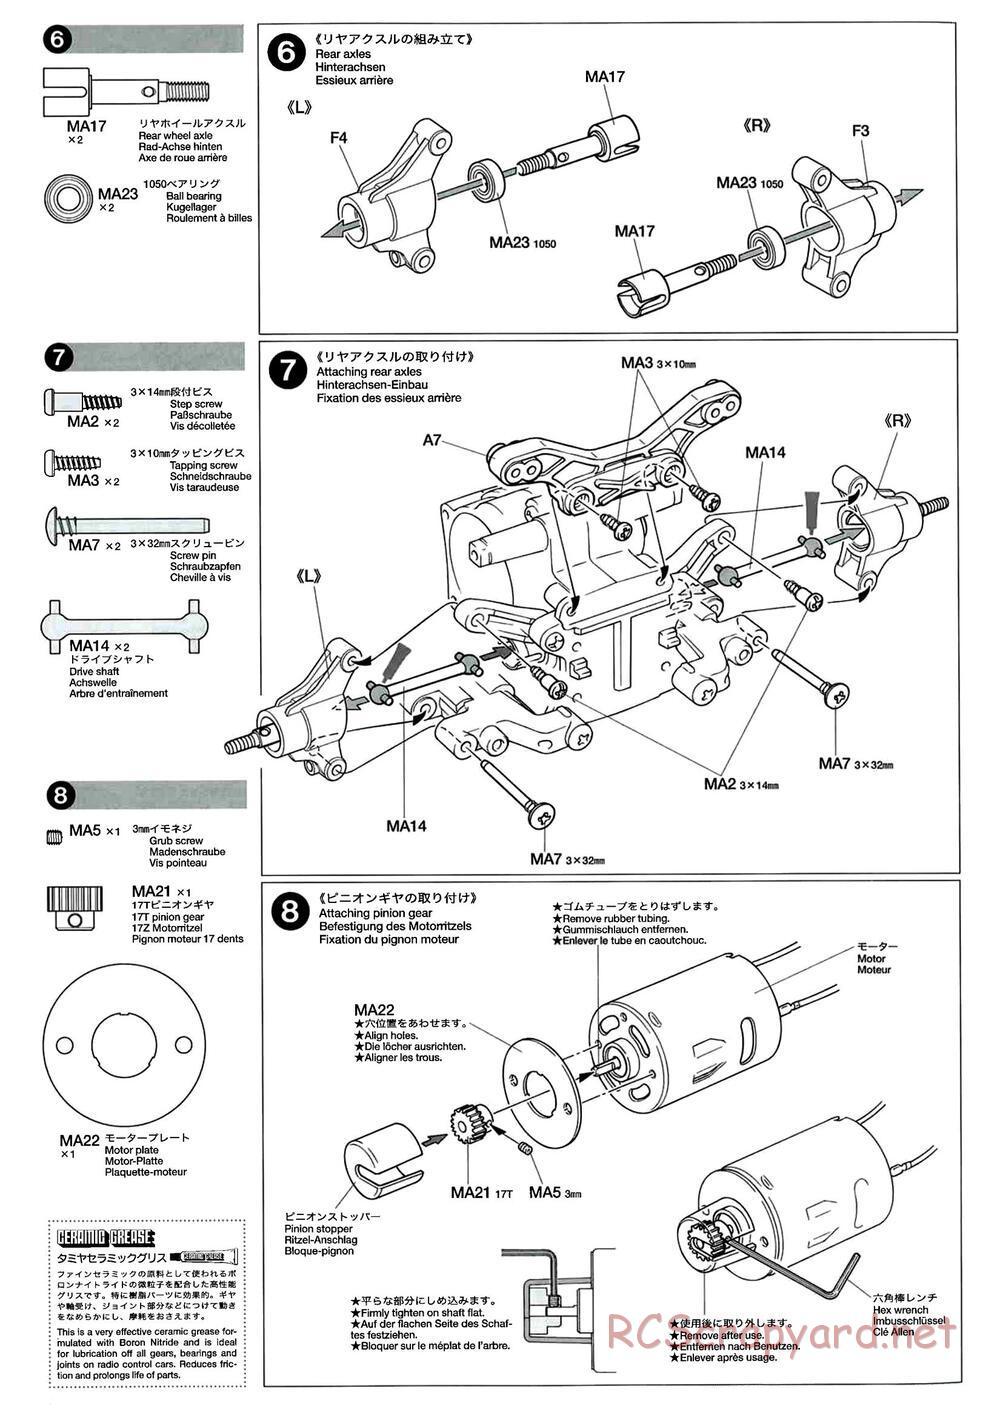 Tamiya - M-04L Chassis - Manual - Page 6